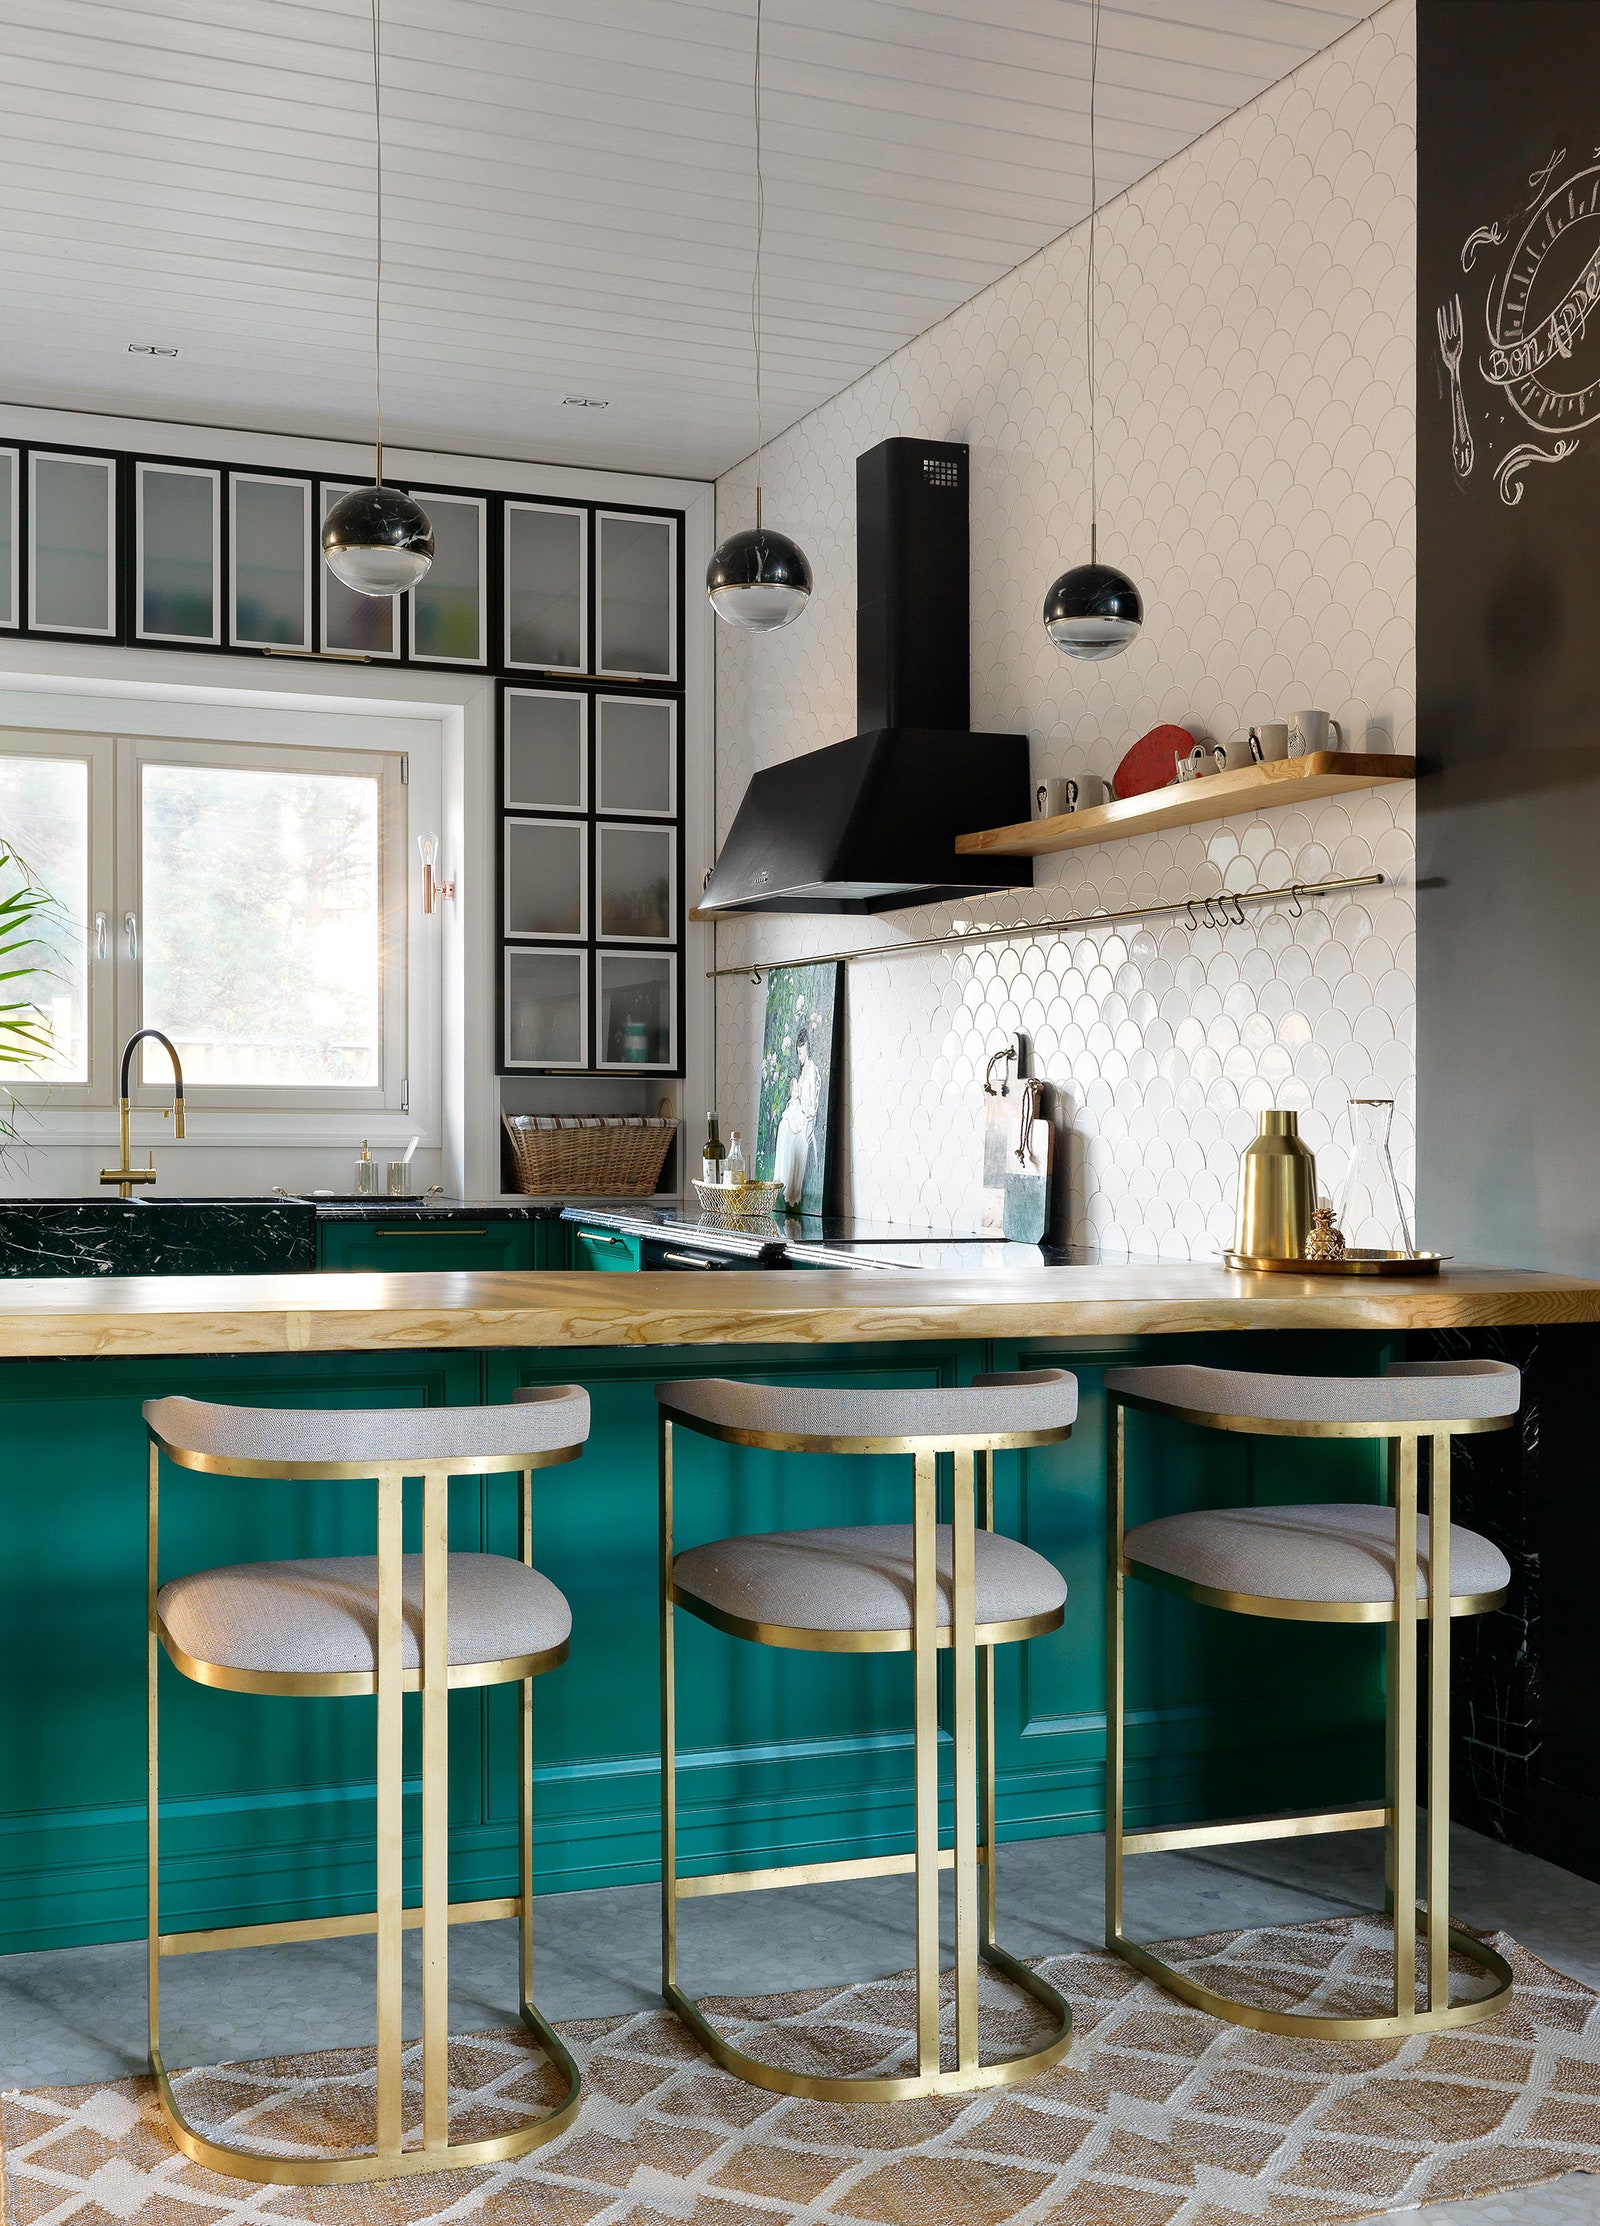 Кухонный гарнитур сделан на заказ по эскизам дизайнера на фабрике Arca барные стулья Anyhome мраморные светильники Viso...